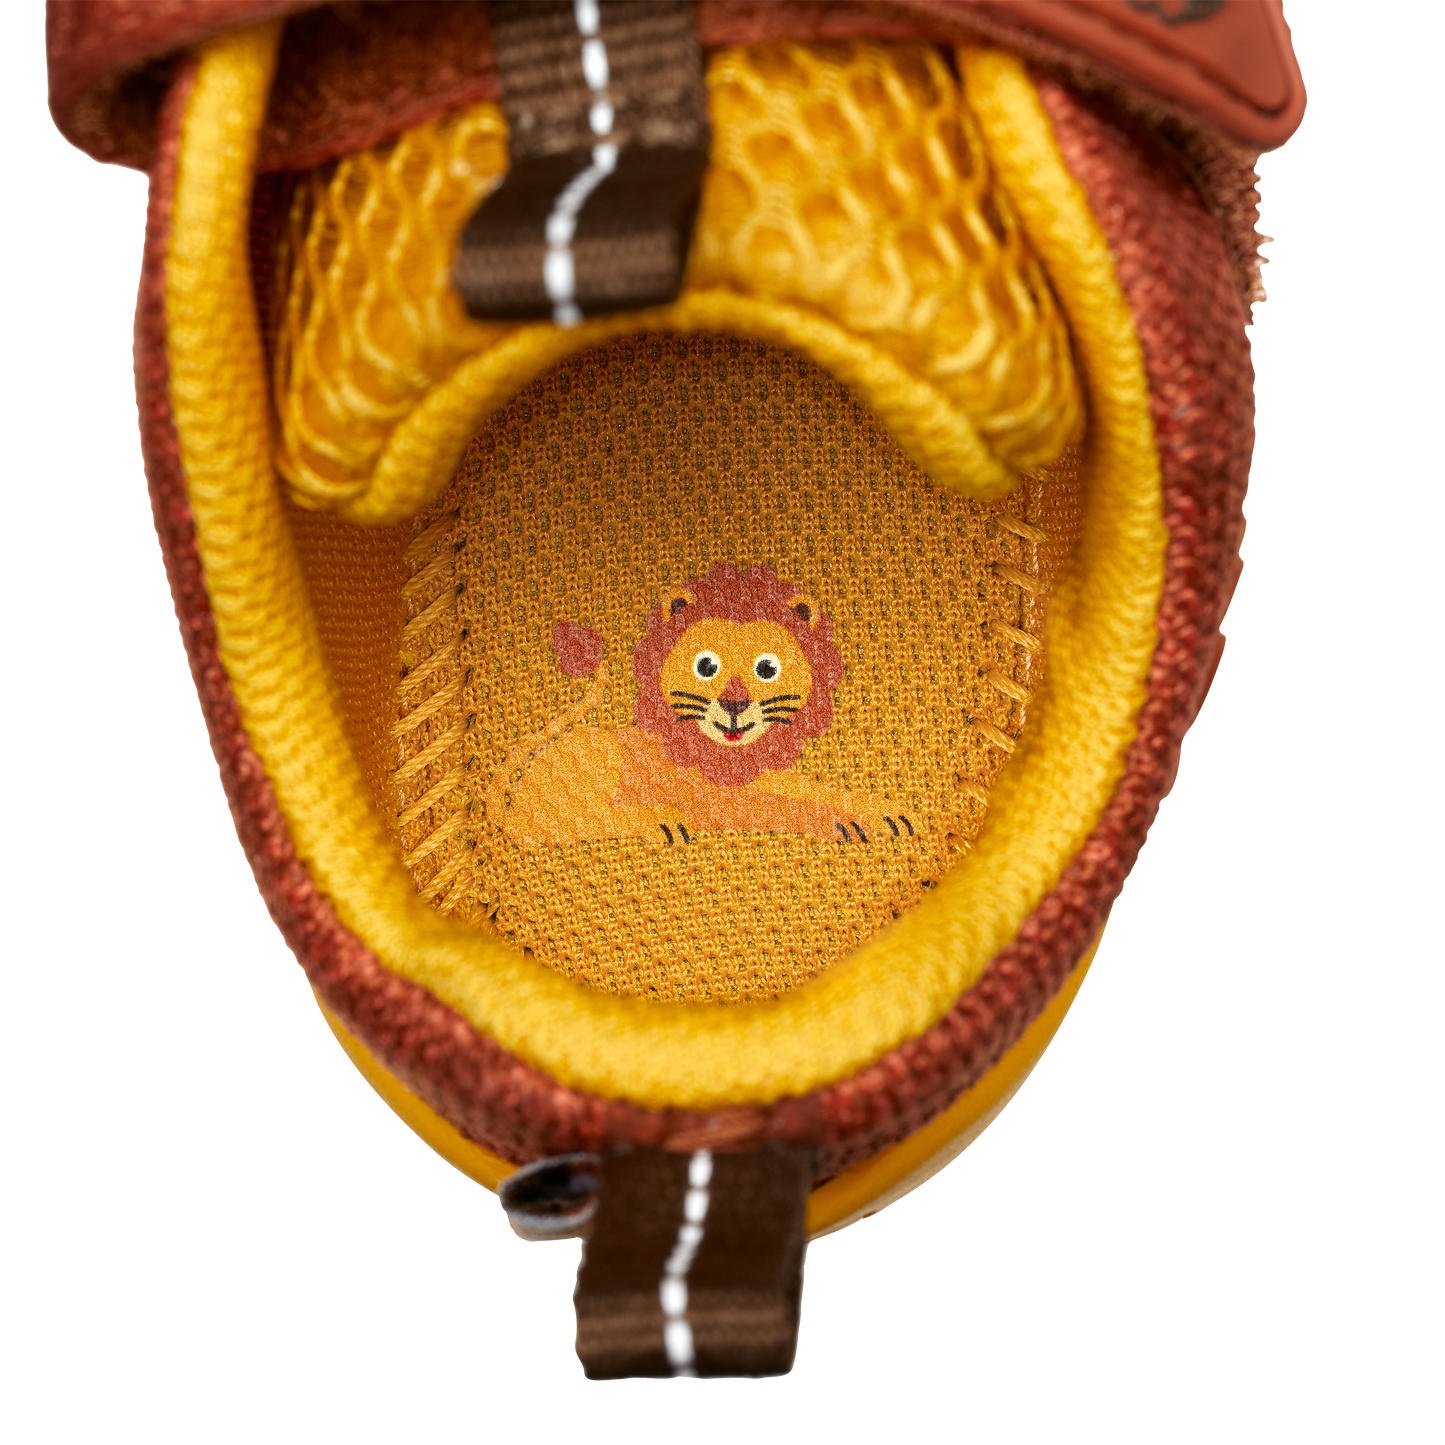 Affenzahn Knit Happy barfods sneakers til børn i farven lion, detalje